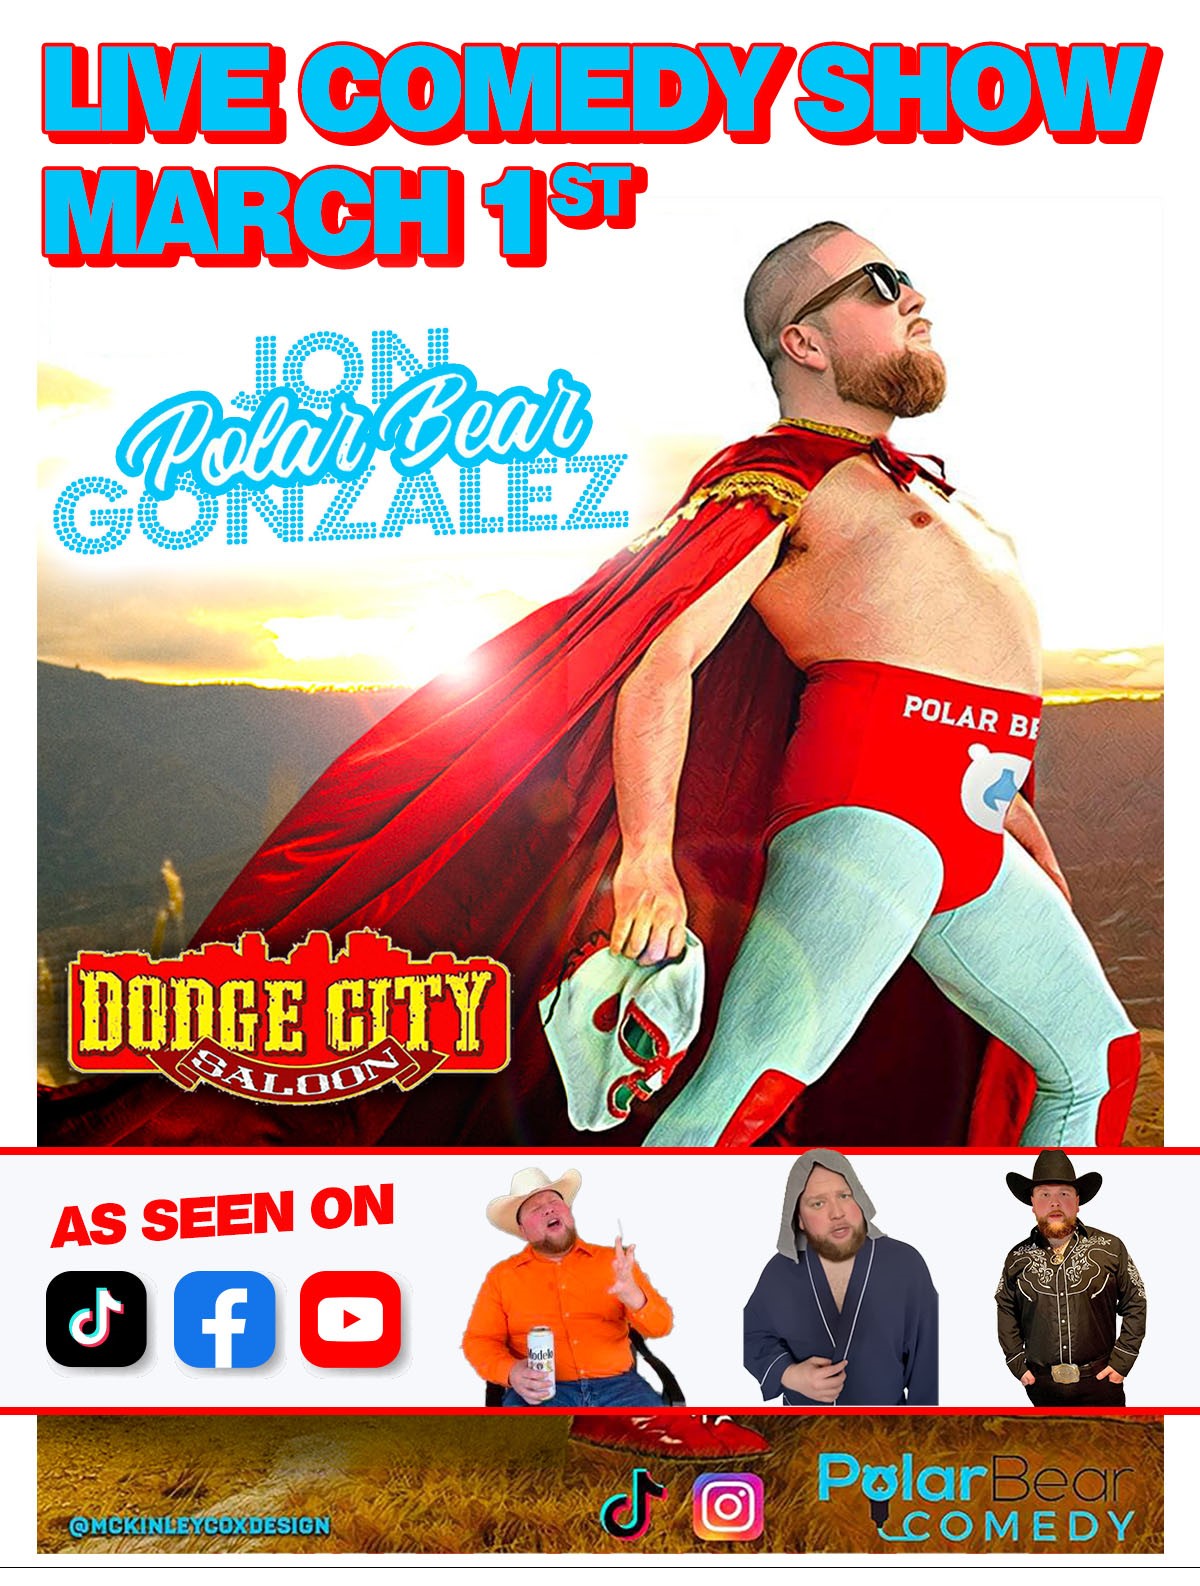 Live Comedy w / Jon POLAR BEAR Gonzalez  on mars 01, 20:00@Dodge City Saloon - Achetez des billets et obtenez des informations surLOLTICKETS COM loltickets.com